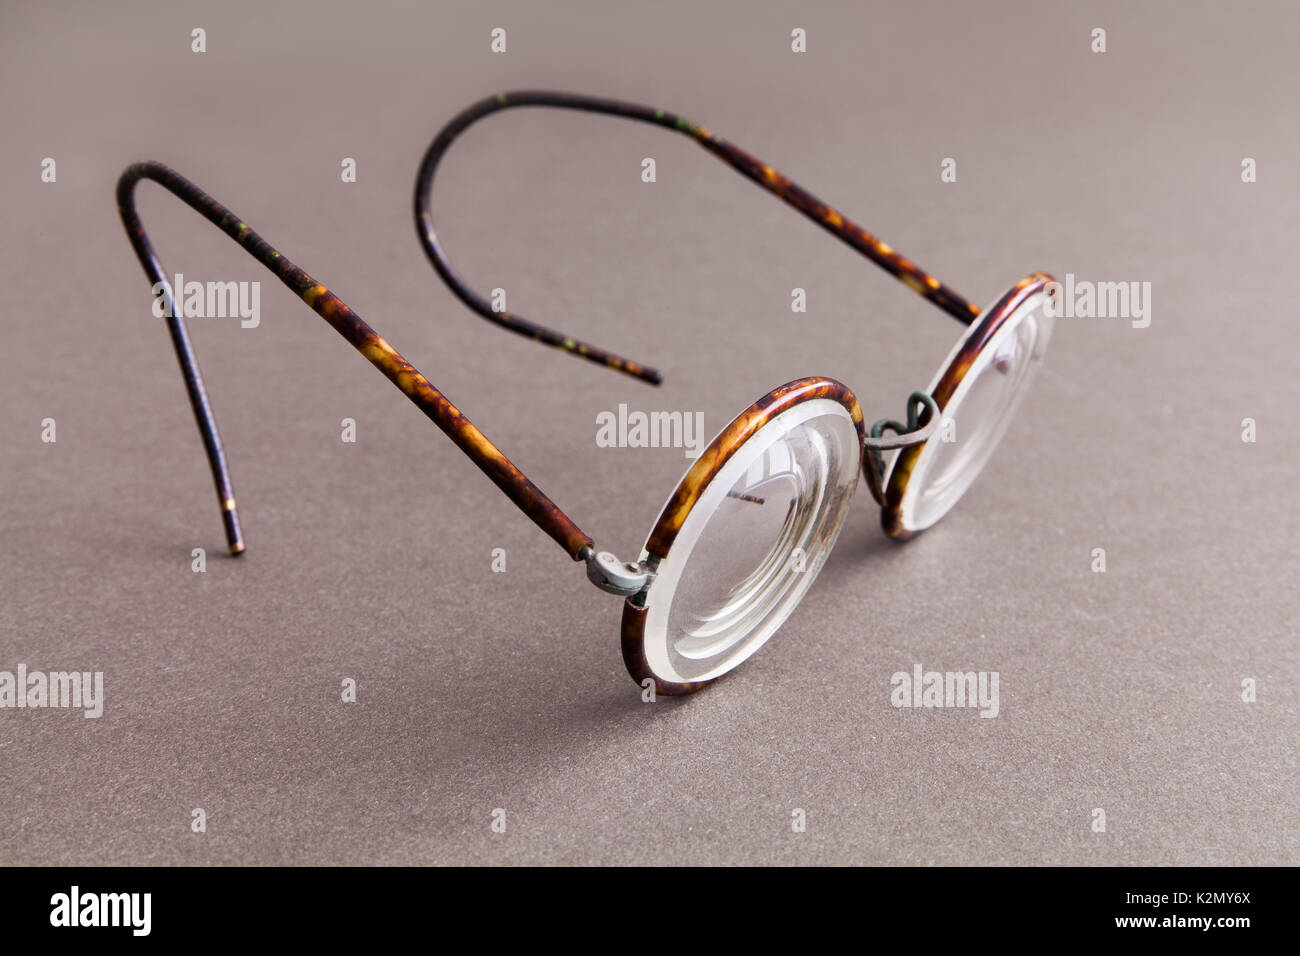 Old Fashion design Brillen Brillen auf grauem Papier Hintergrund. Vintage  Style Männer Mode Accessoires. Makro, geringe Tiefenschärfe, Soft Focus  Stockfotografie - Alamy